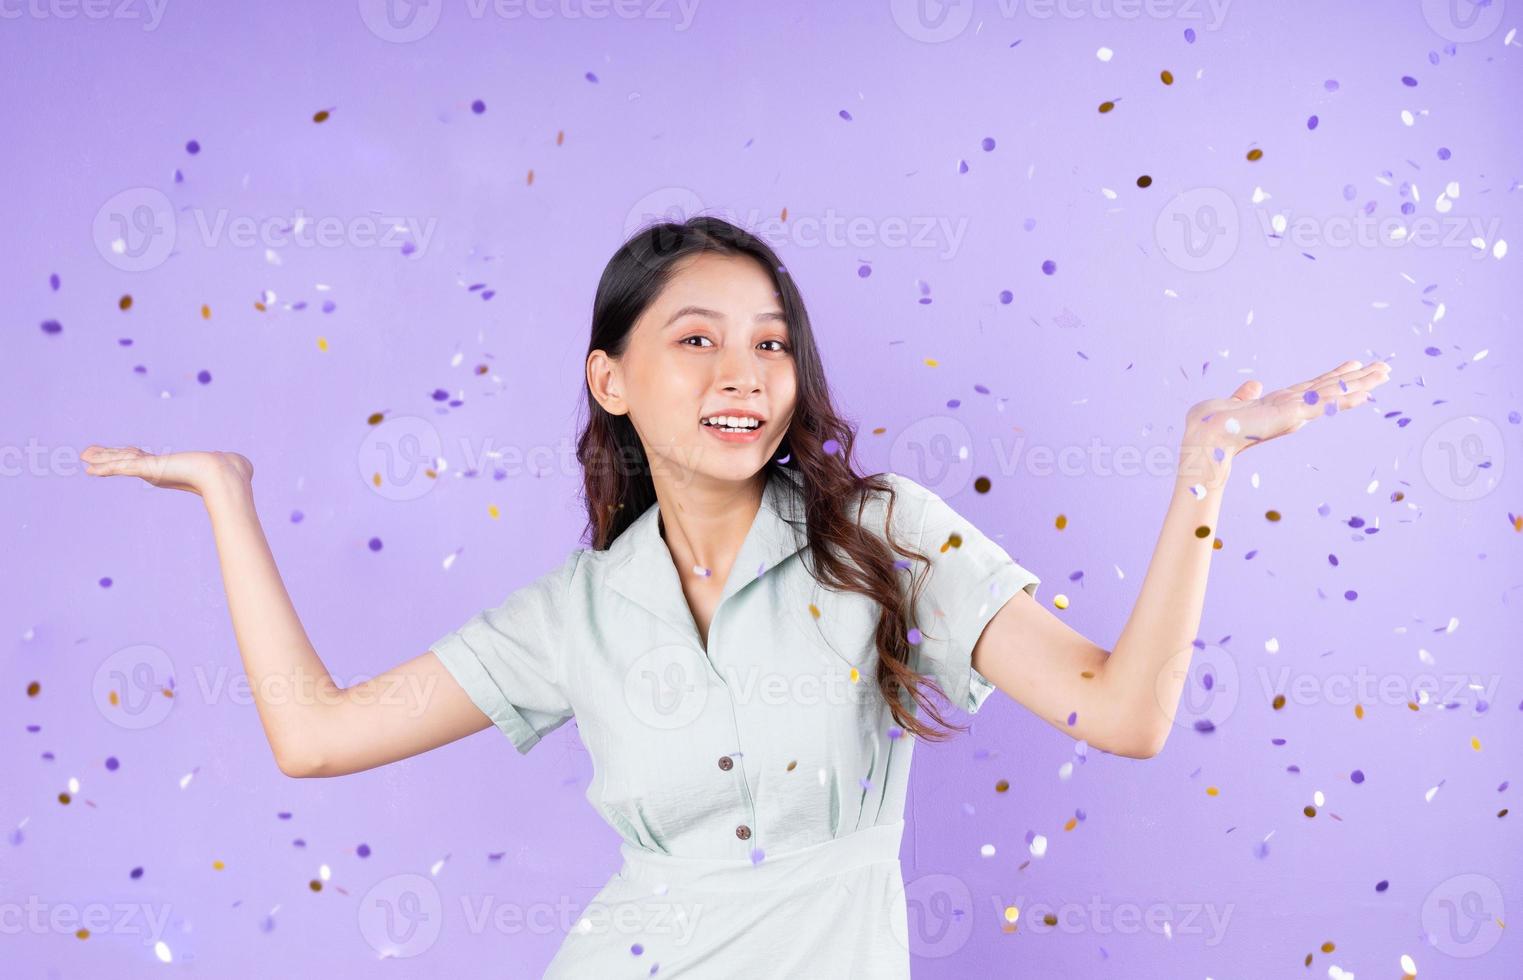 portret van een mooi meisje dat eronder staat en confetti koopt om te vieren, geïsoleerd op een paarse achtergrond foto